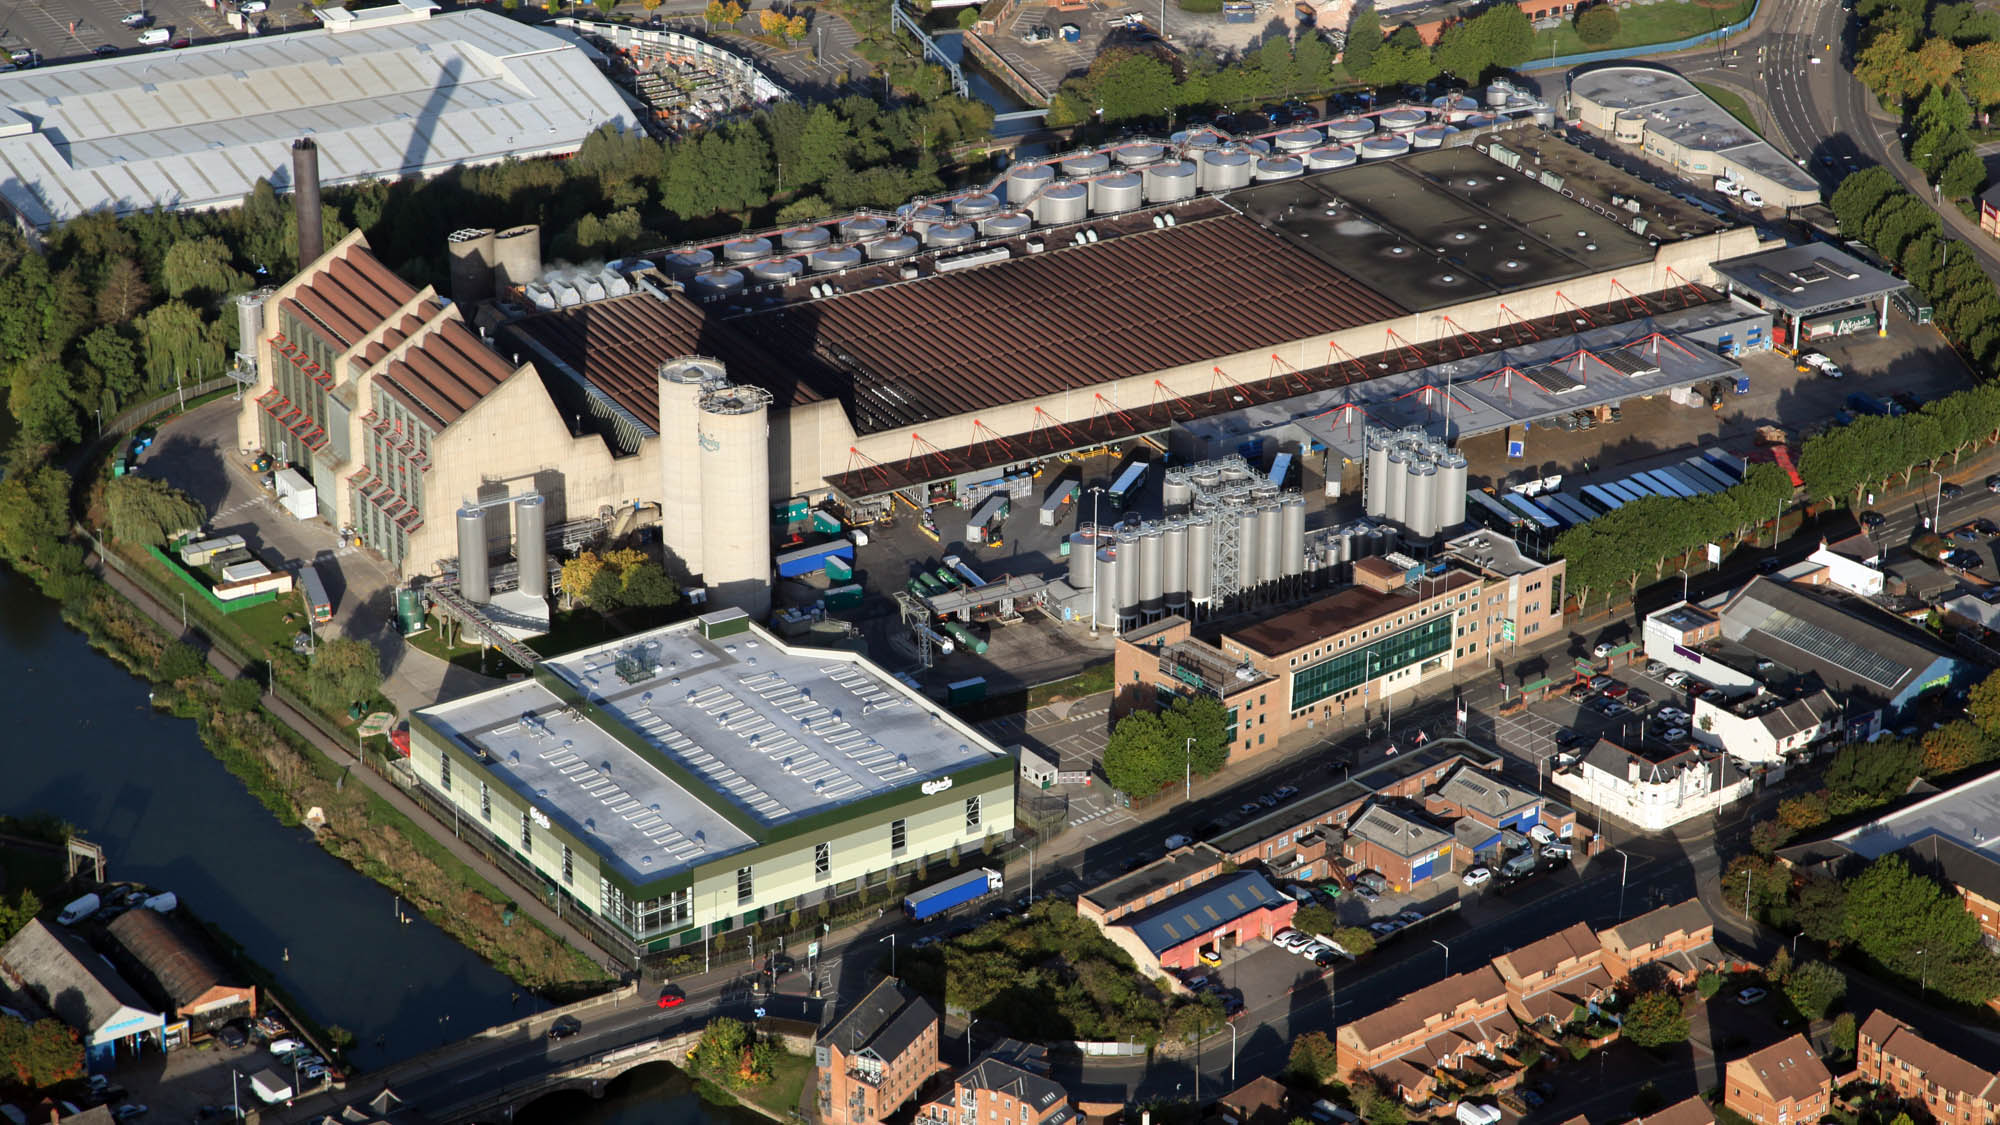 Aerial view of Carlsberg's brewery